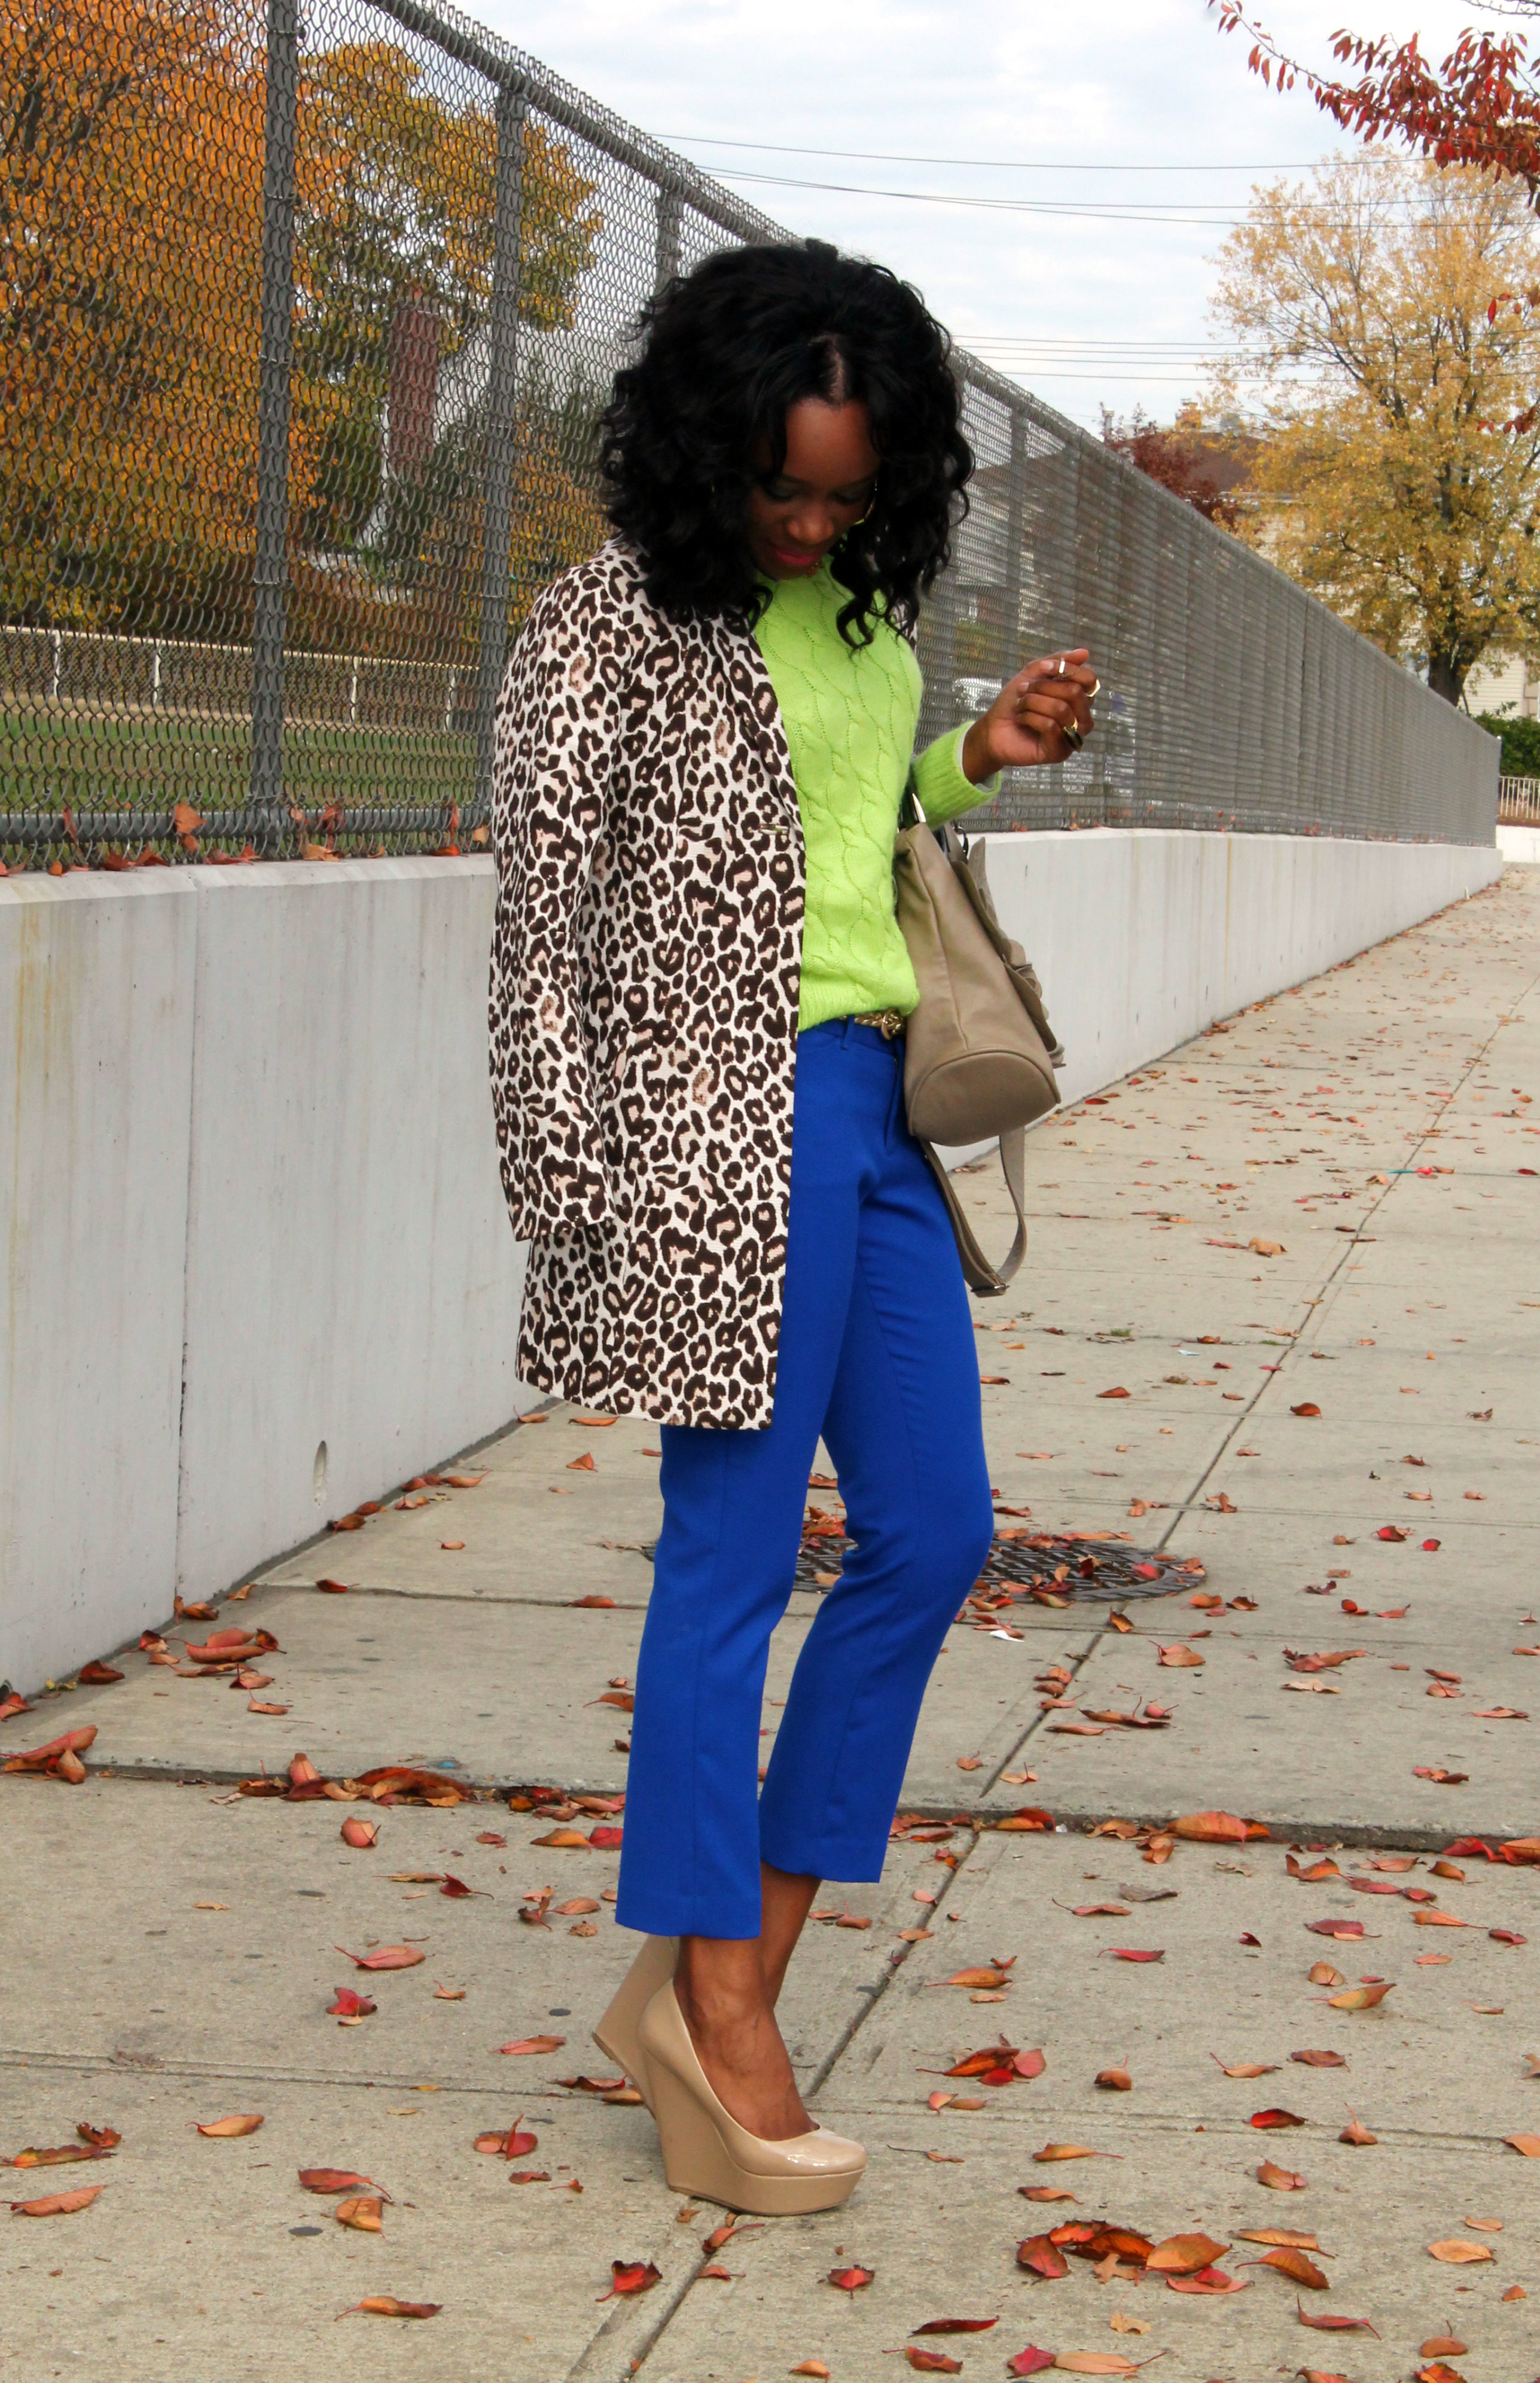 “Wardrobe remix: 1 leopard coat, 5 ways”